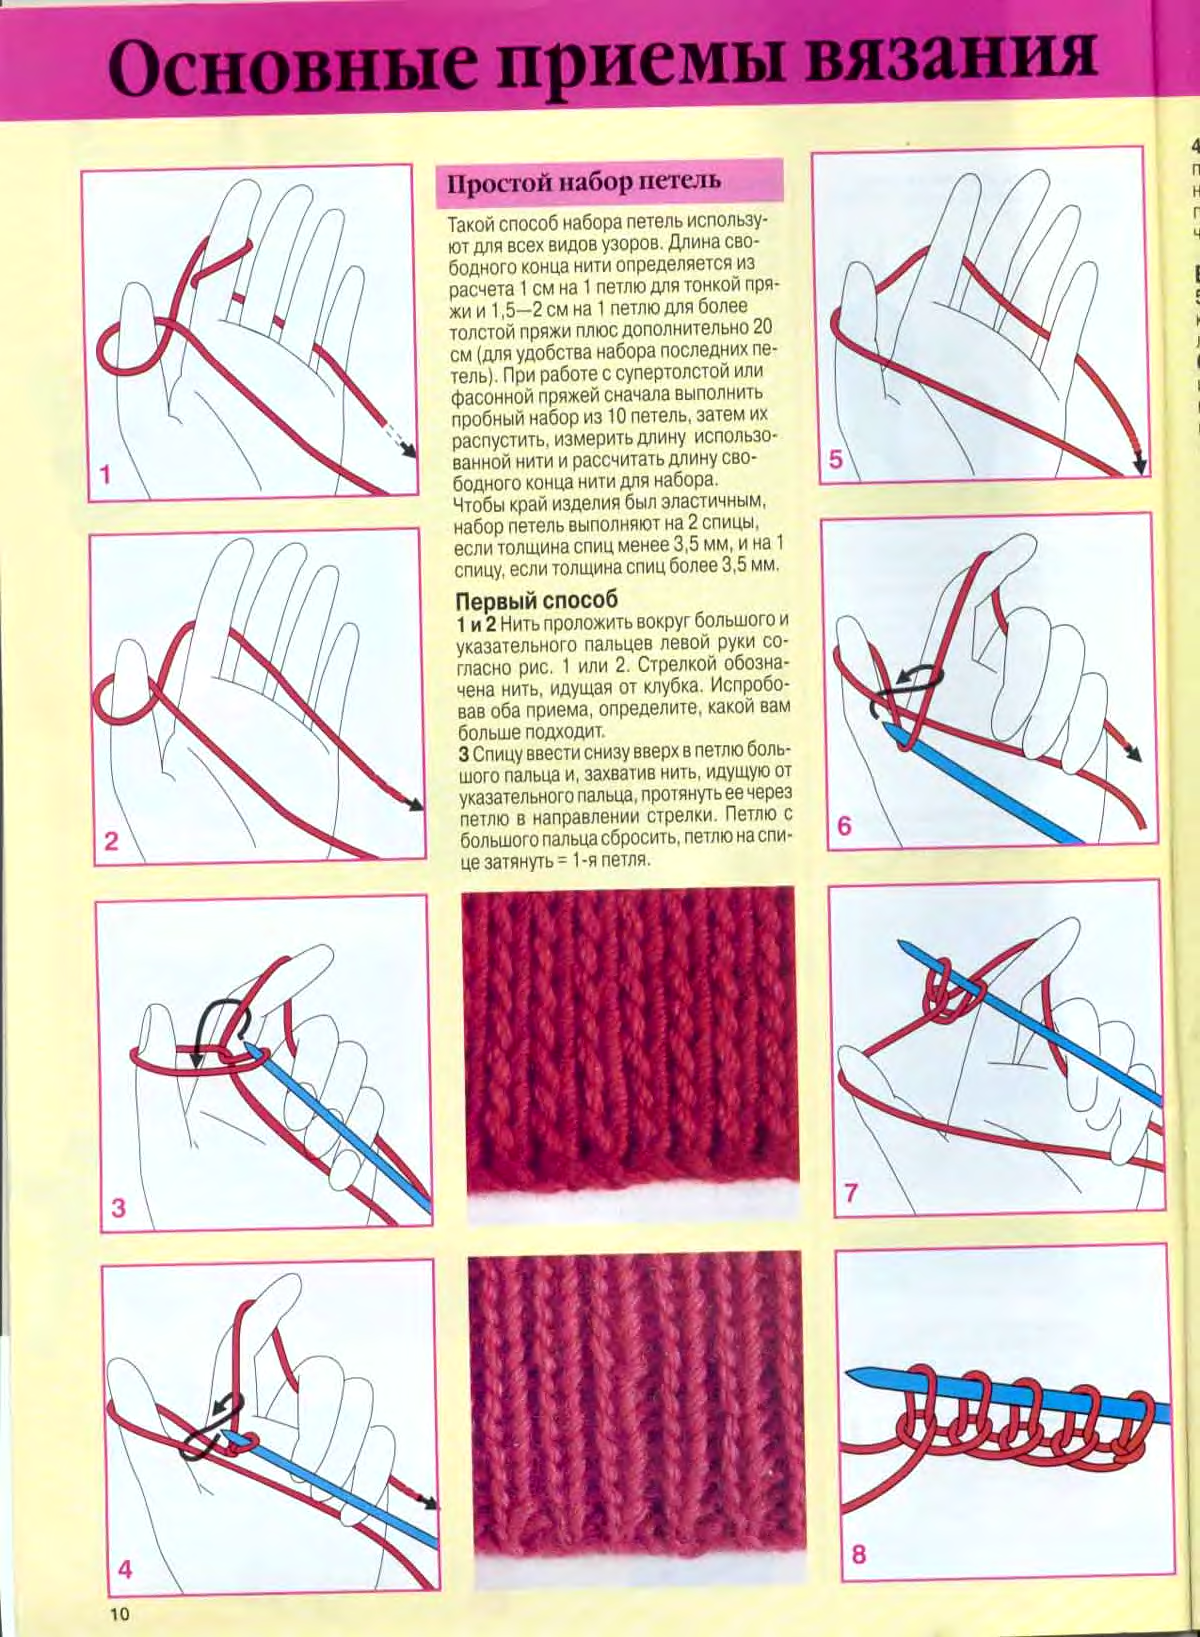 Менее простейший способ. Вязка на спицах для начинающих уроки пошагово. Вяжем шарф спицами для начинающих пошагово. Вязание шарфа спицами для начинающих пошагово. Как вязать на спицах для начинающих пошагово схемы.